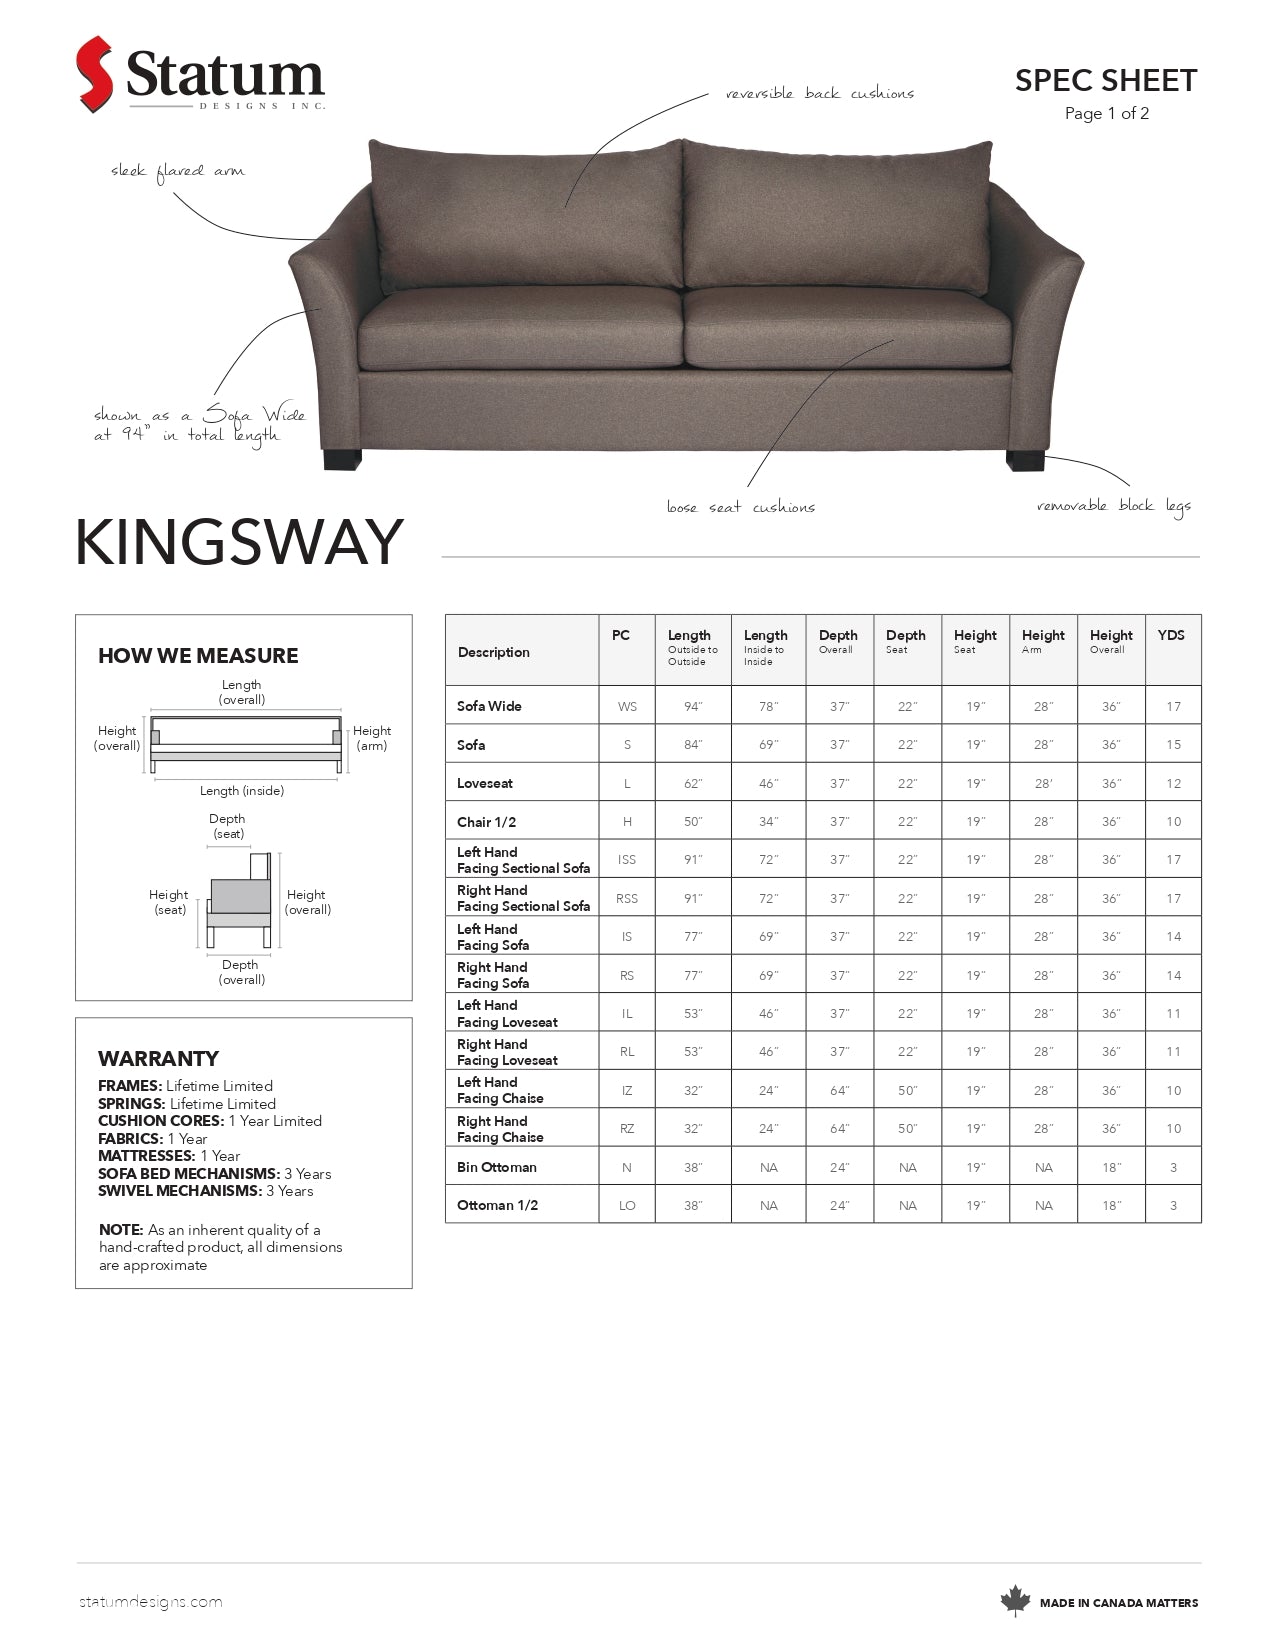 Kingsway Sofa